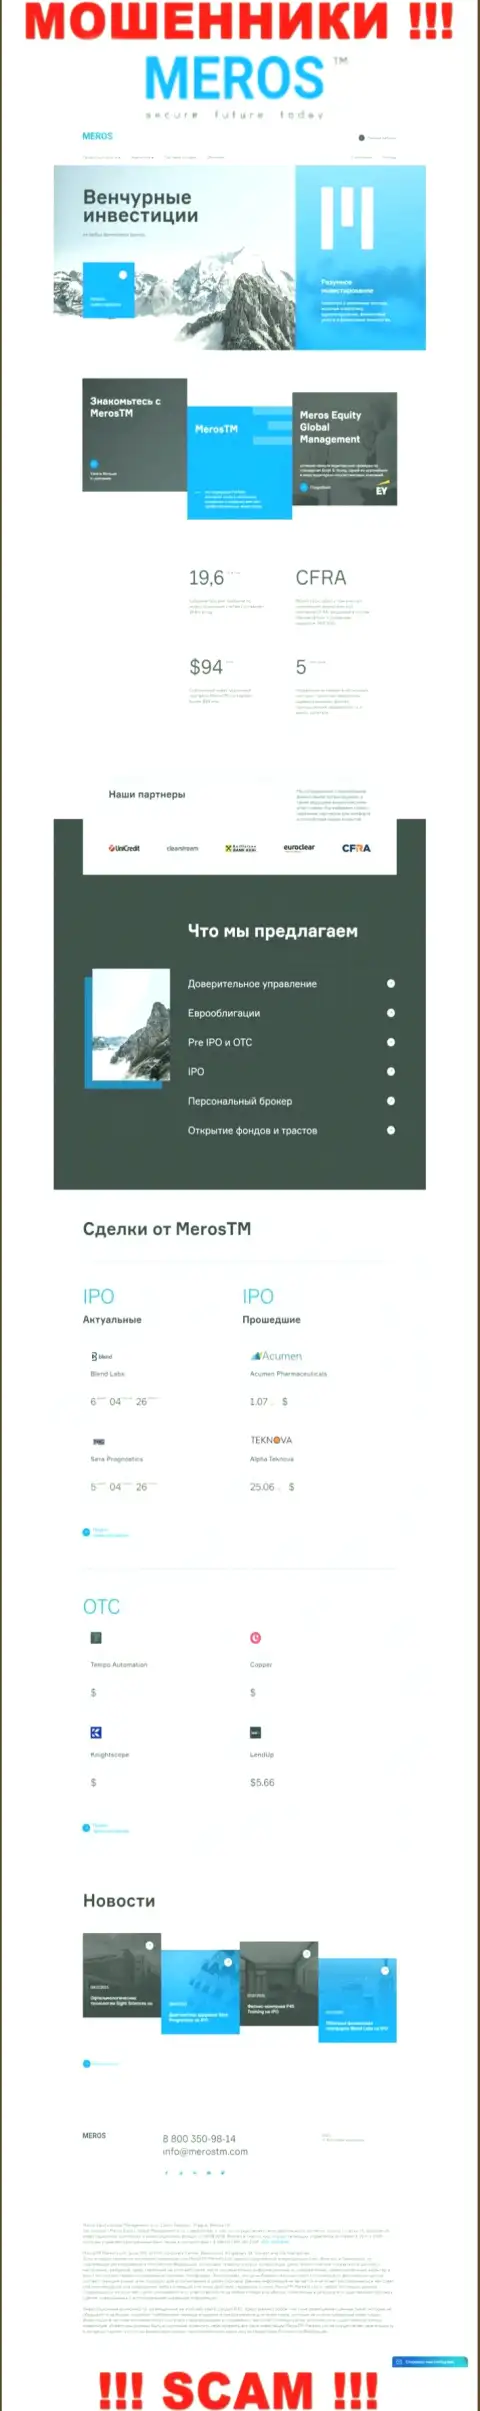 Разбор официального веб-портала мошенников МеросМТ Маркетс ЛЛК